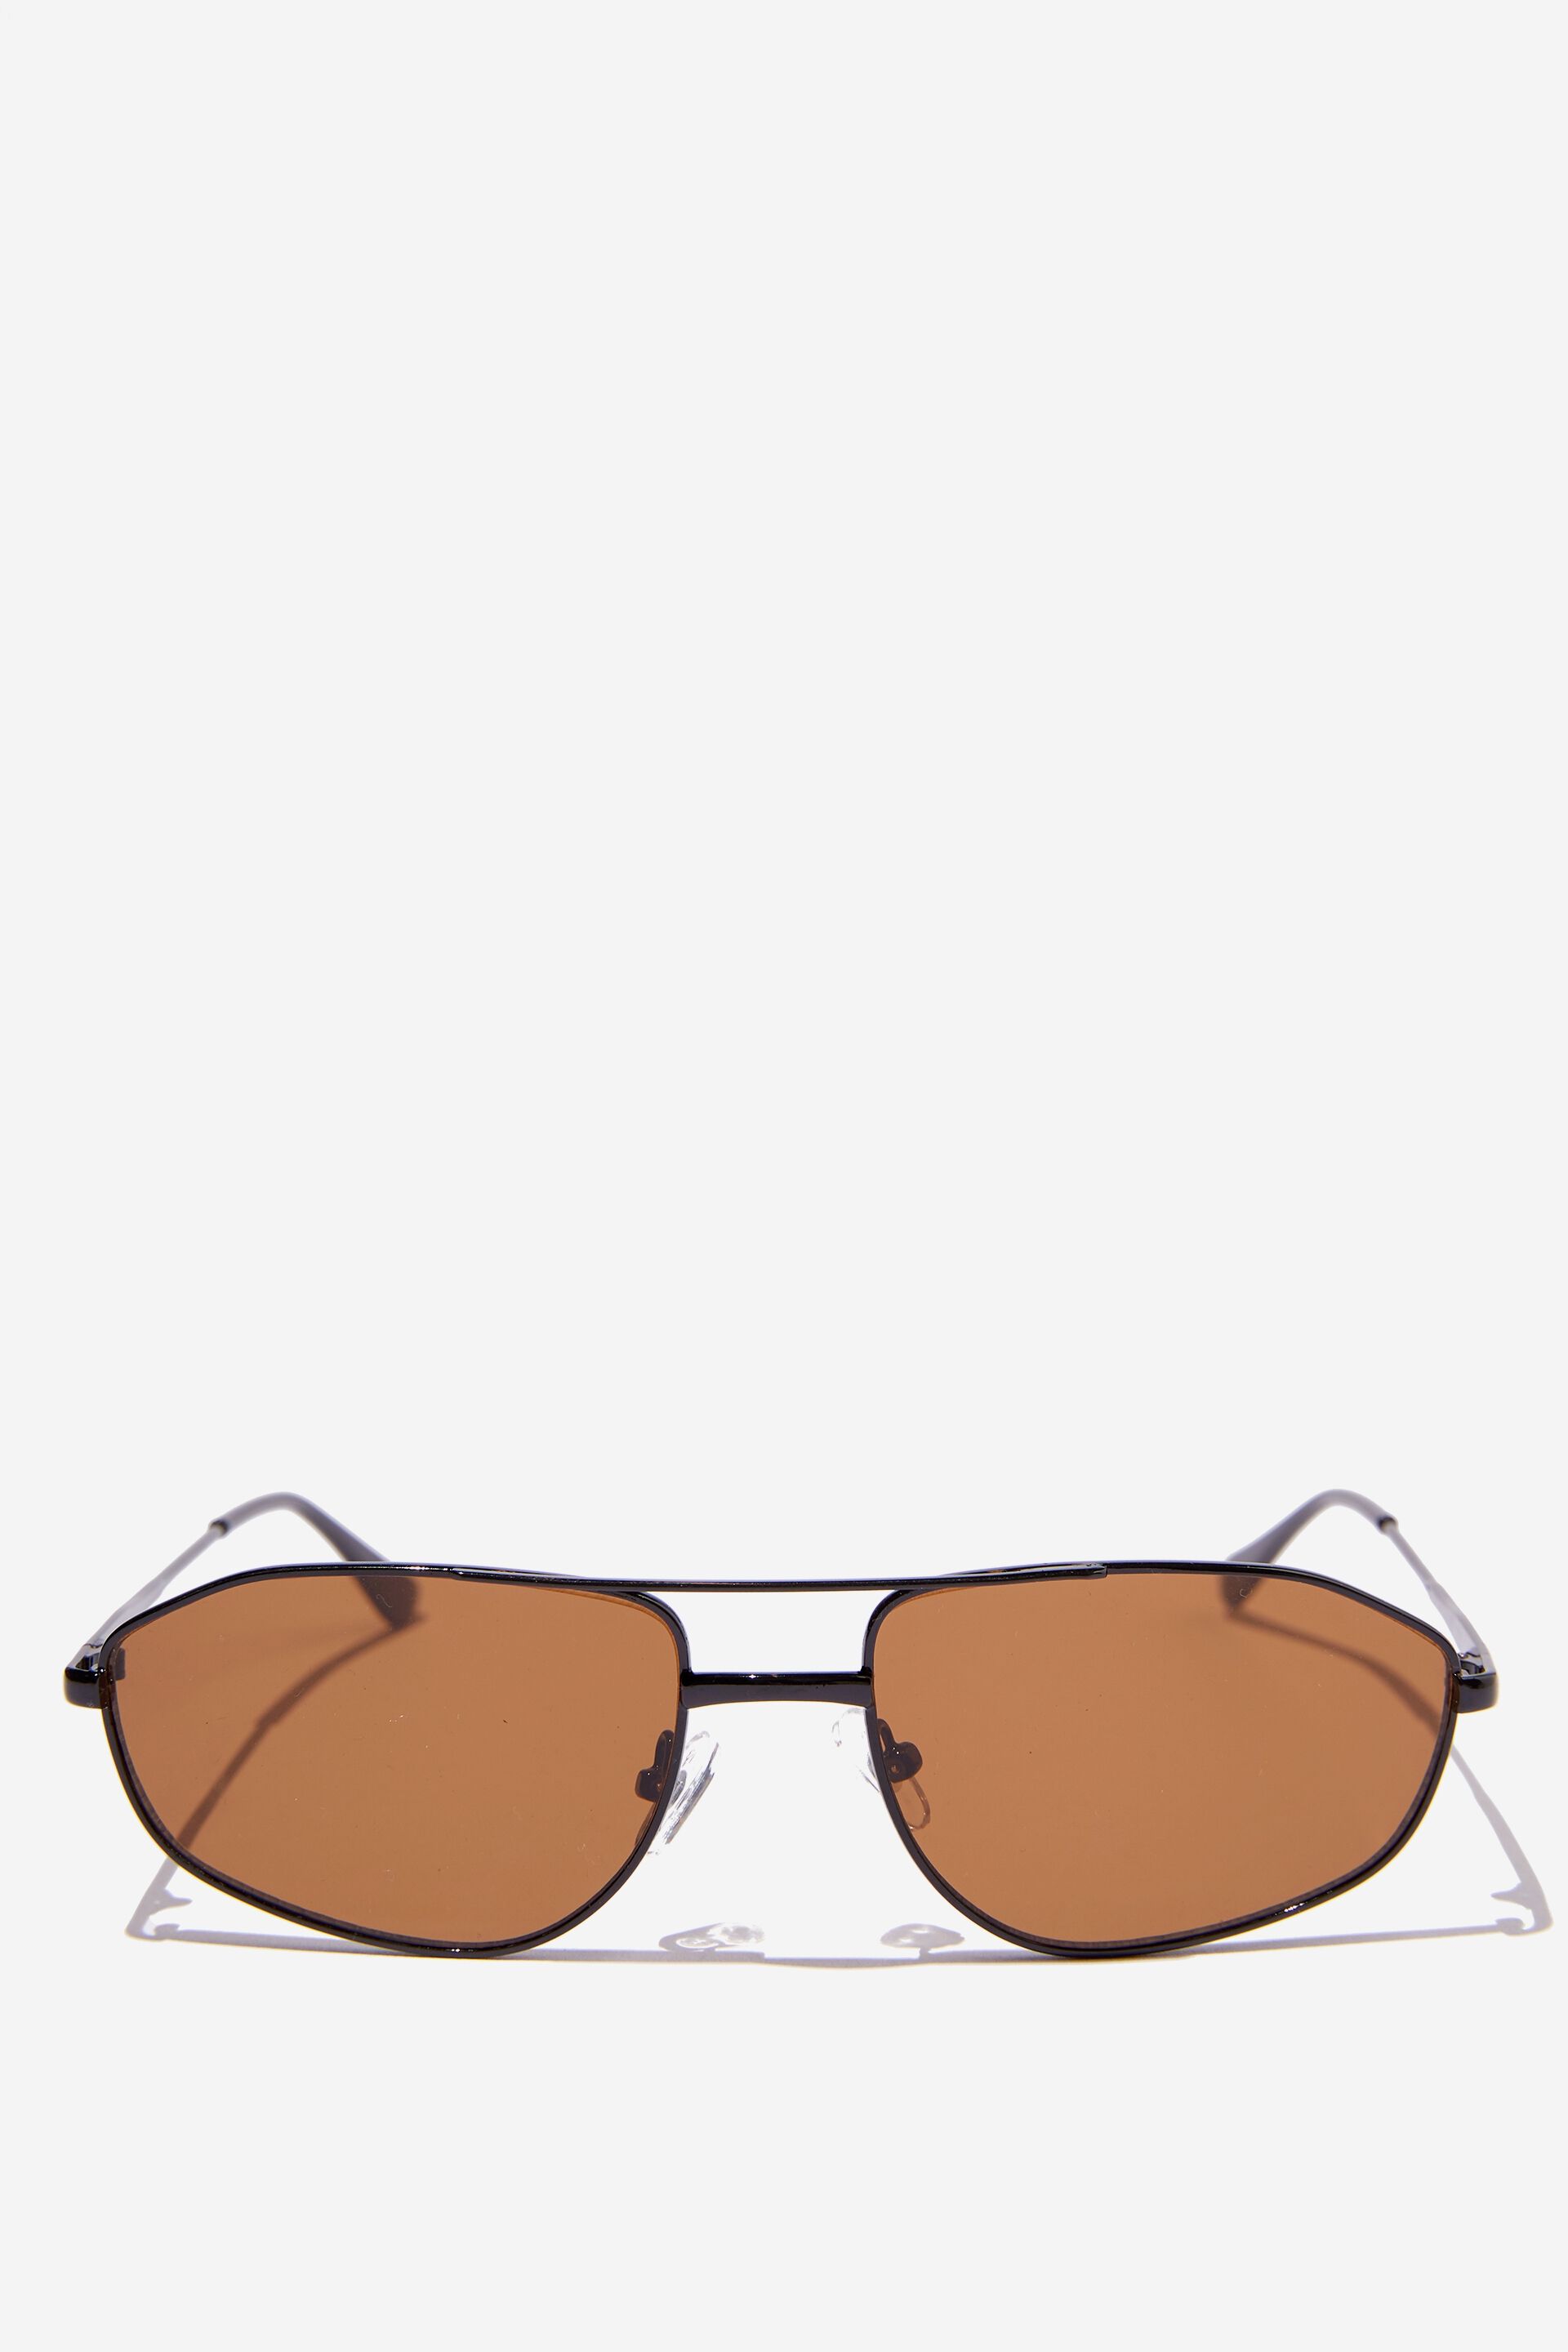 Women Sunglasses | Naomi Angled Aviator Sunglasses - OB16721